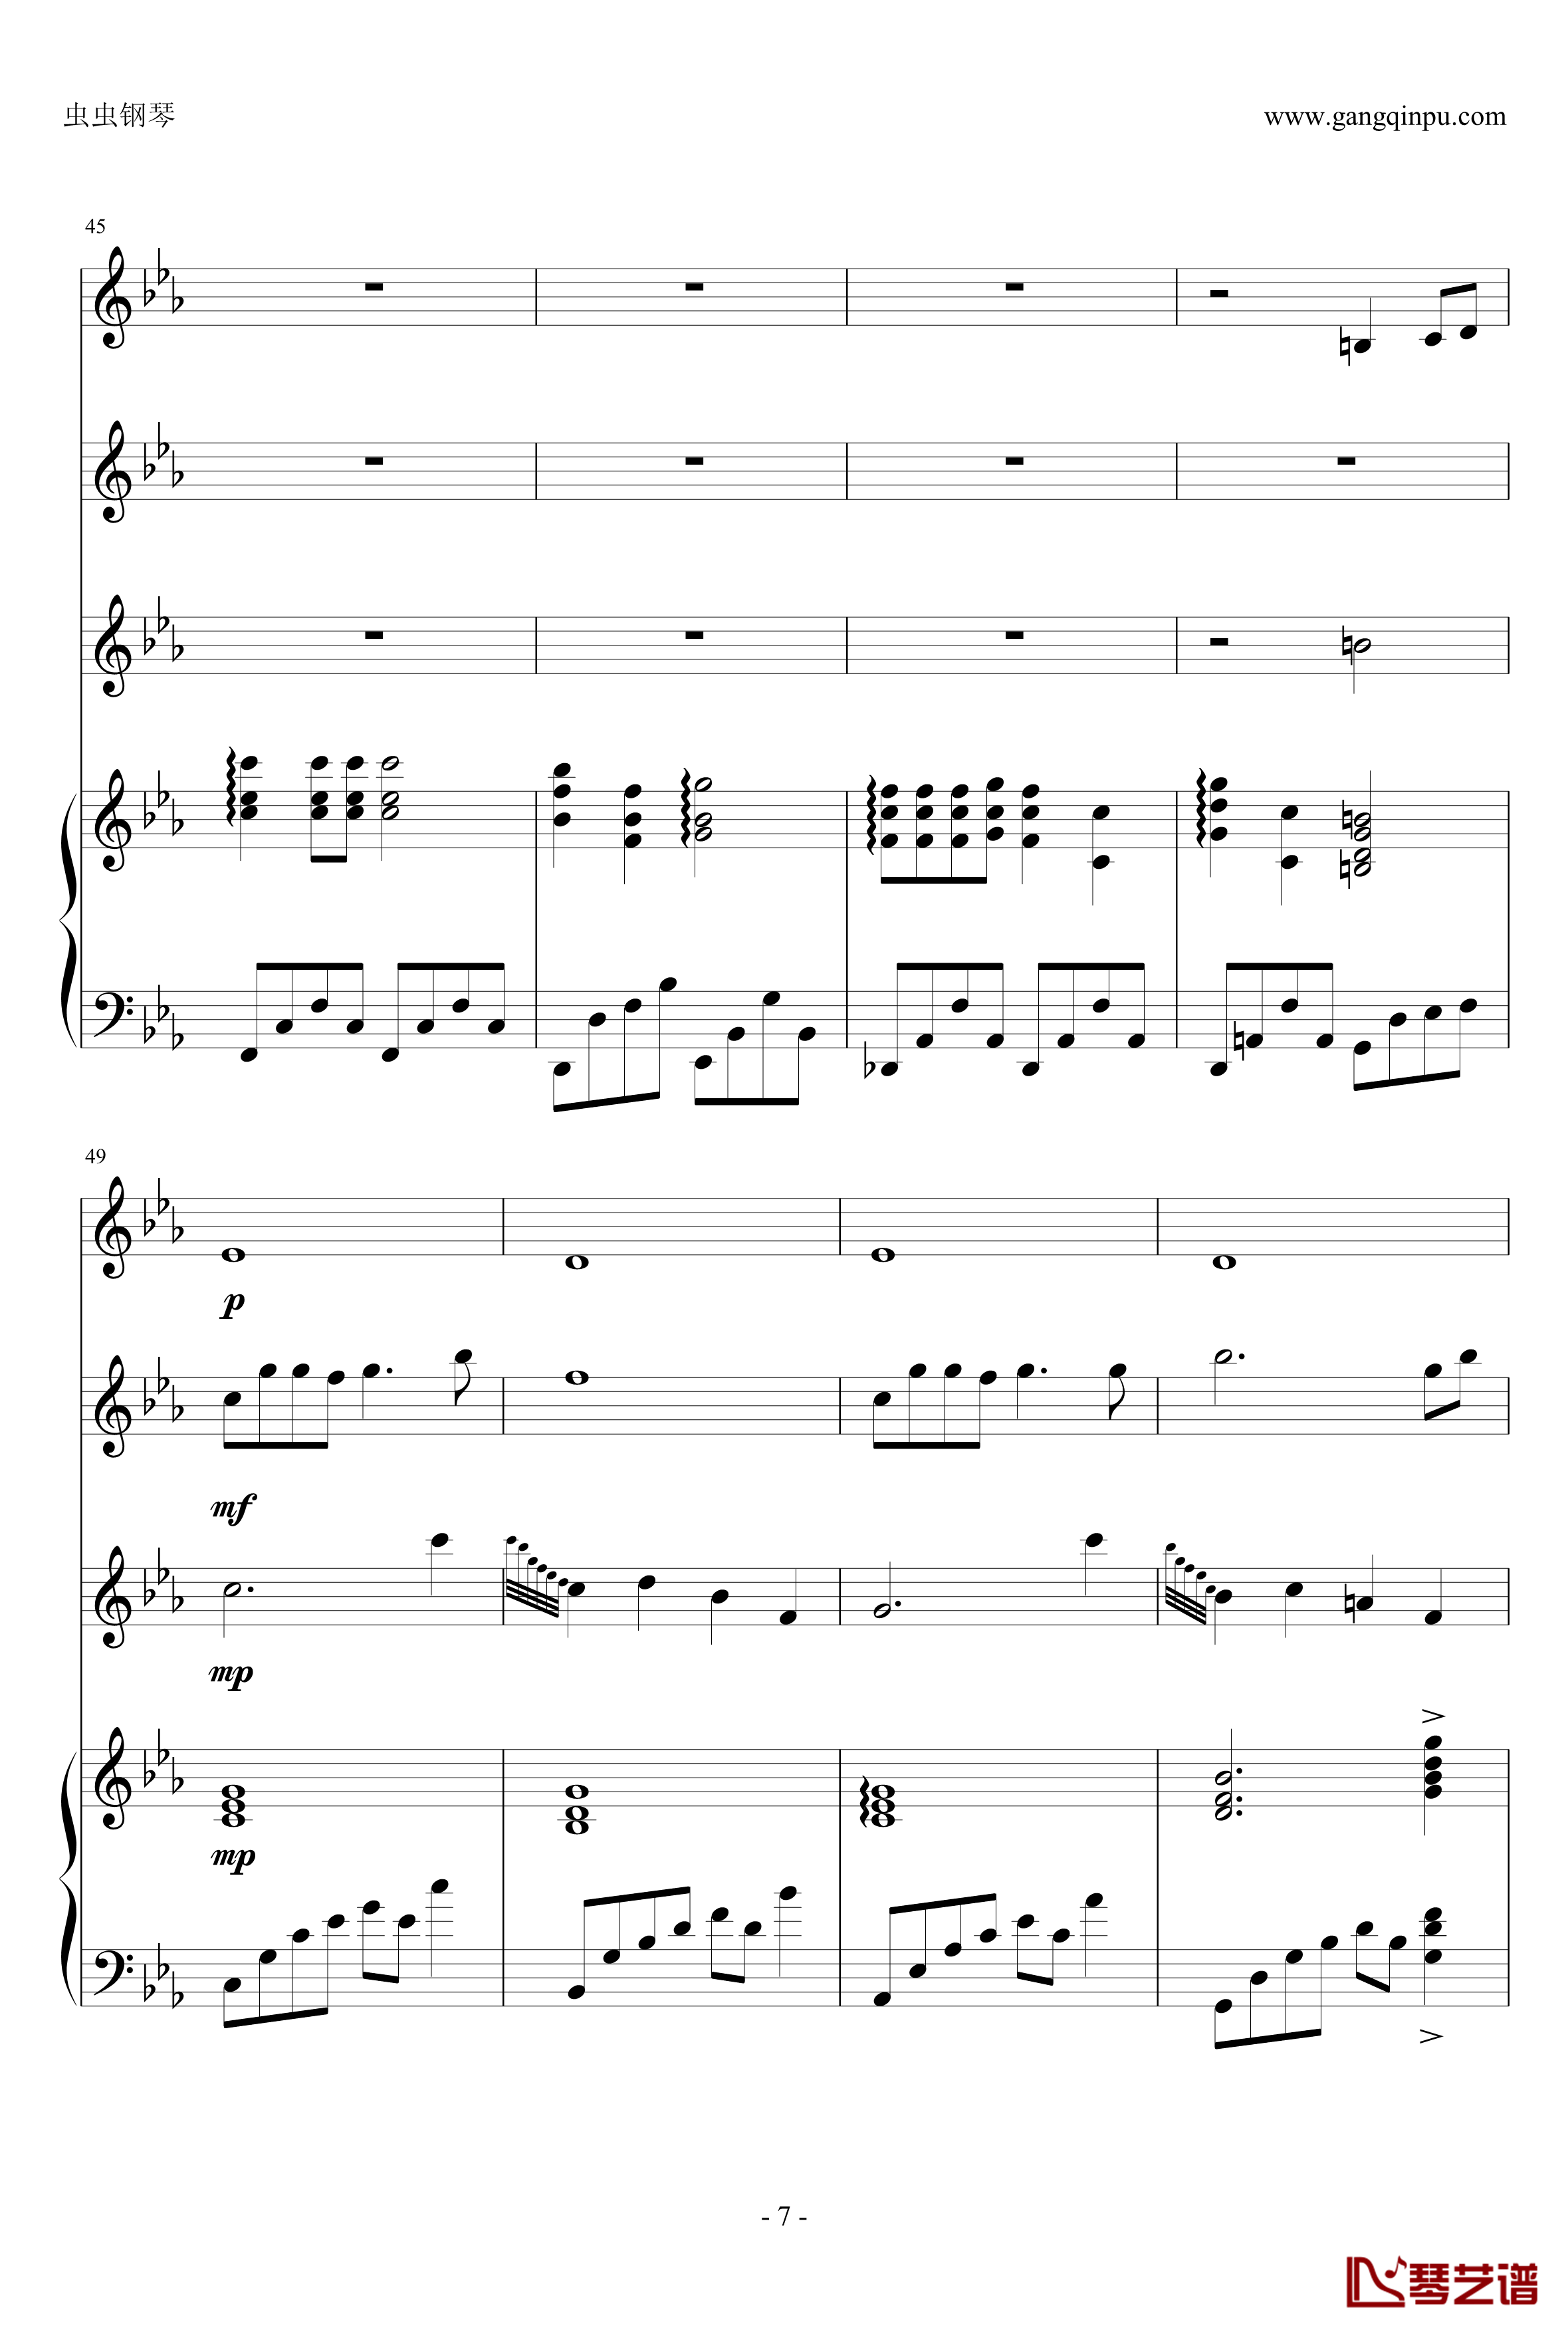 幽灵公主钢琴谱-合奏版总谱-二胡、古筝、小提琴、钢琴-久石让7